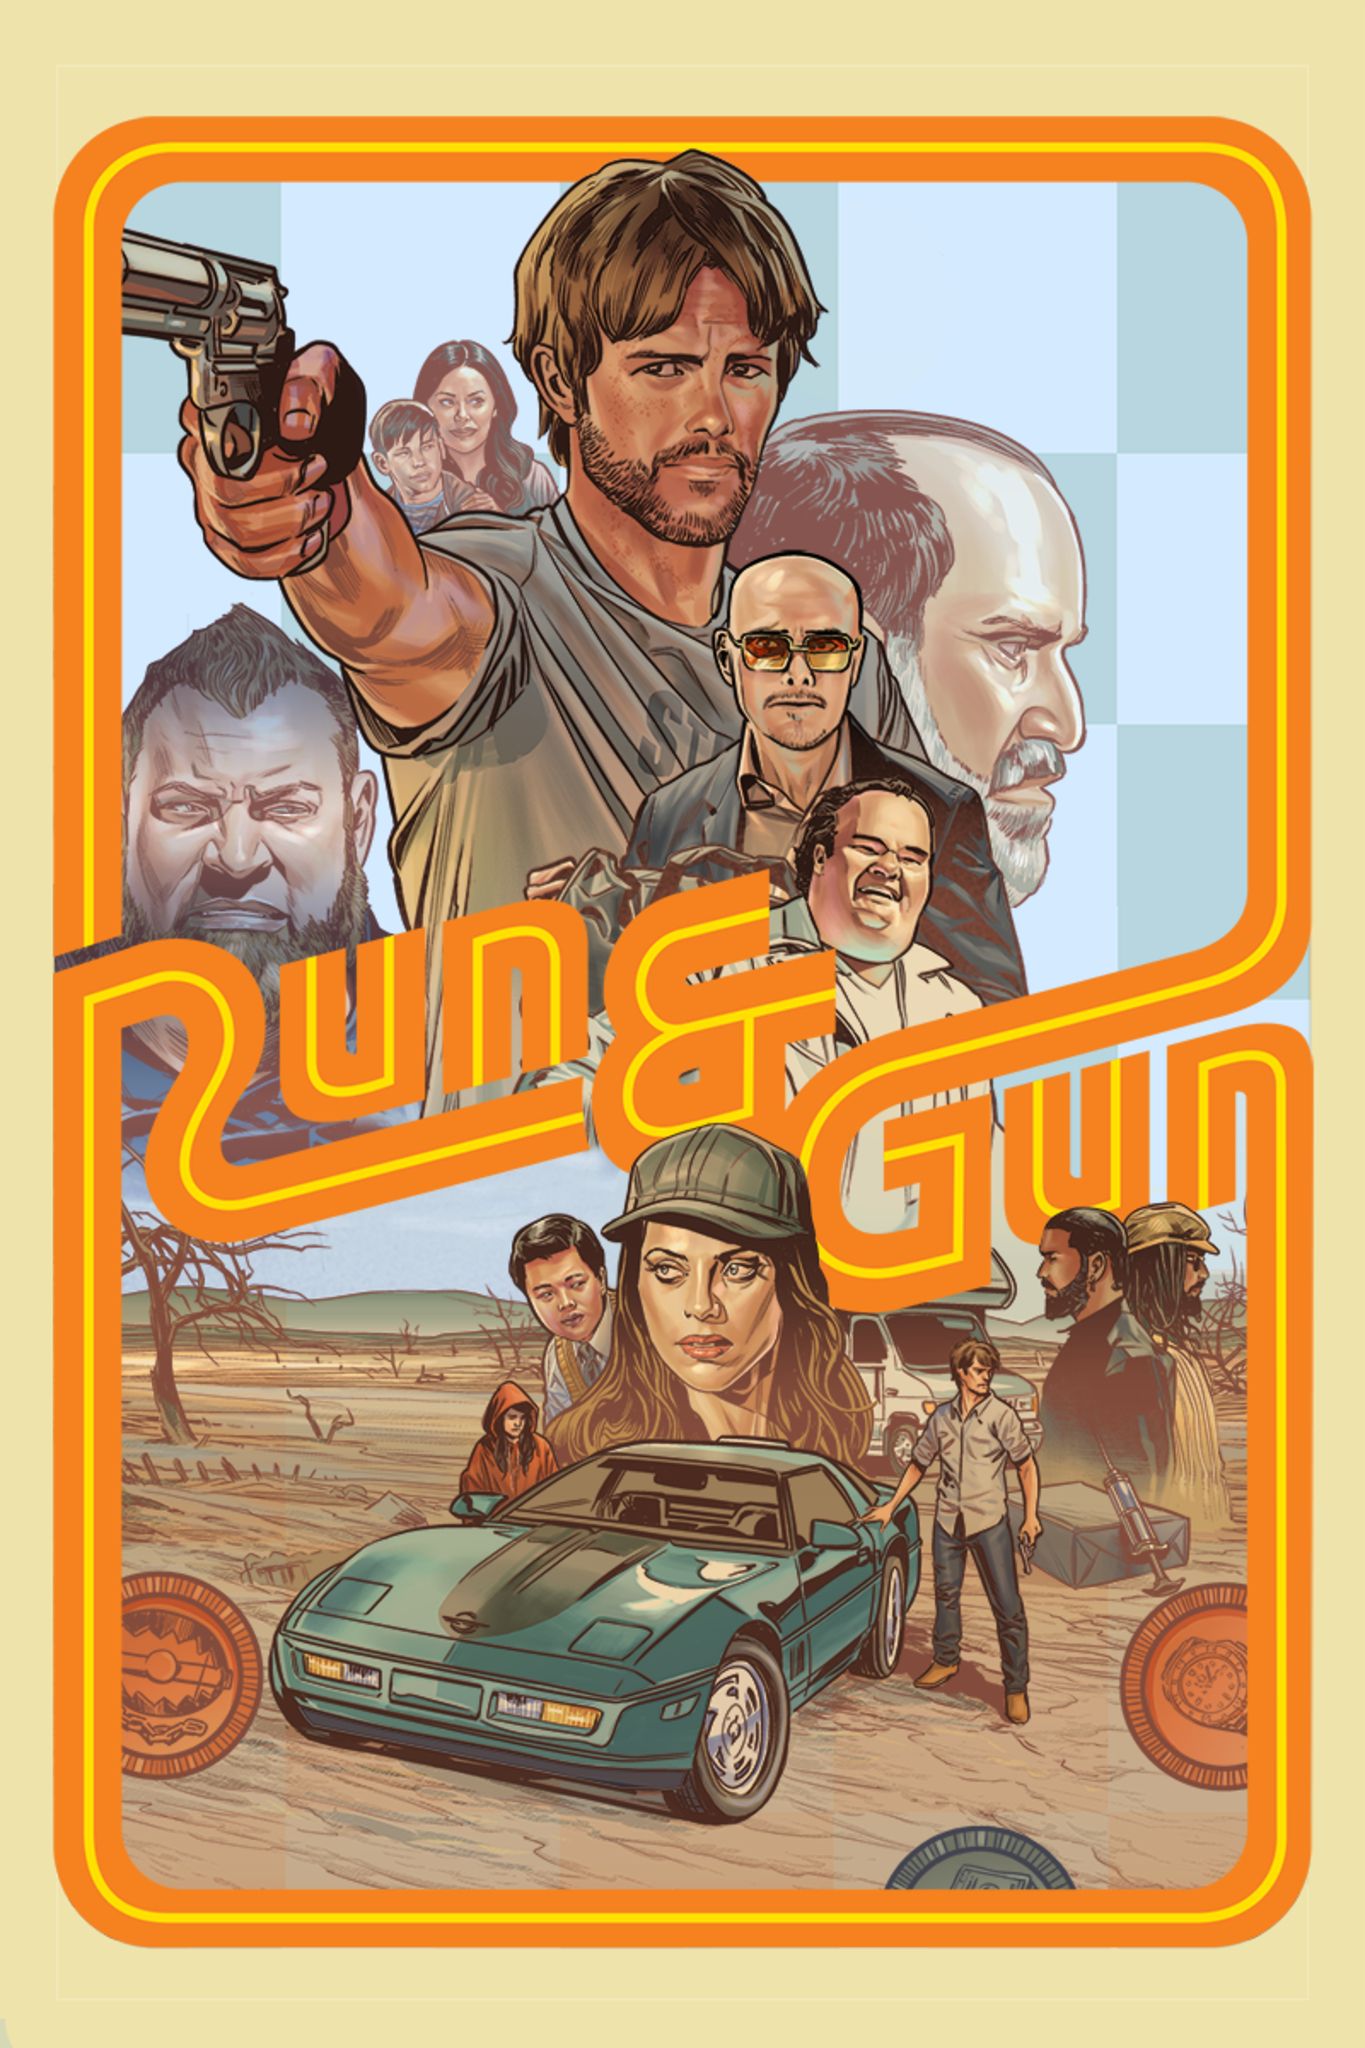 Run & Gun Trailer Shows Funny Action Flick [EXCLUSIVE]